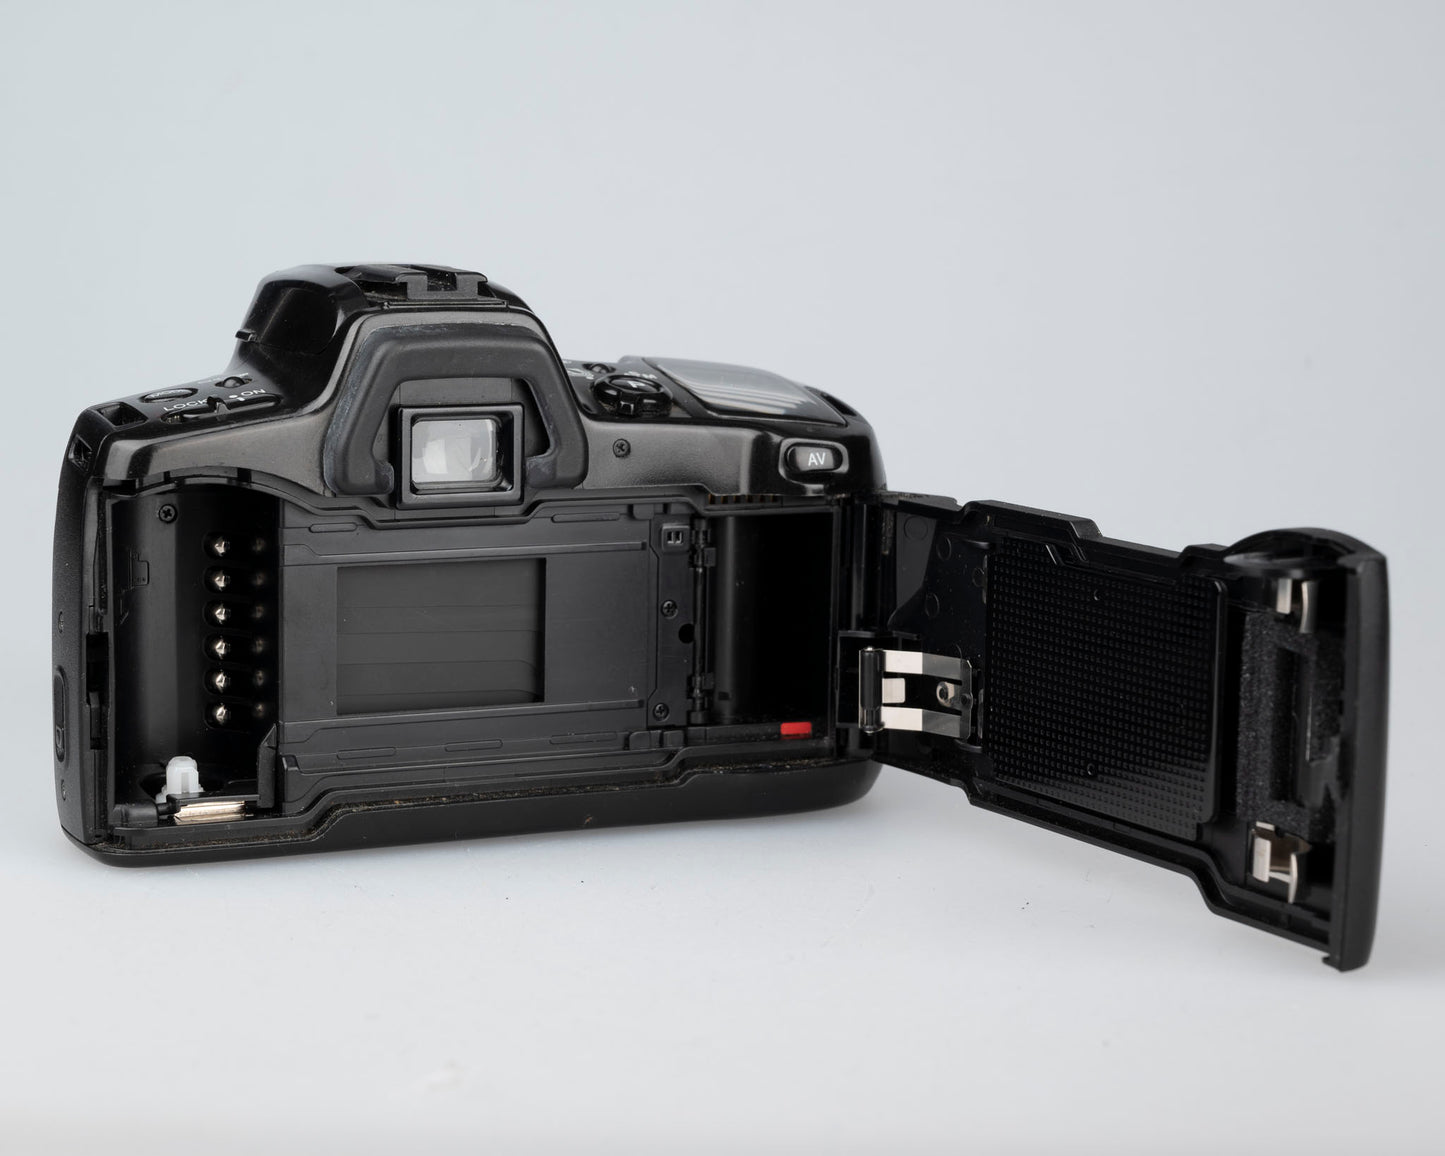 Minolta Dynax 500si 35mm film SLR w/ Maxxum Af 35-80 power zoom lens (serial 98601250)